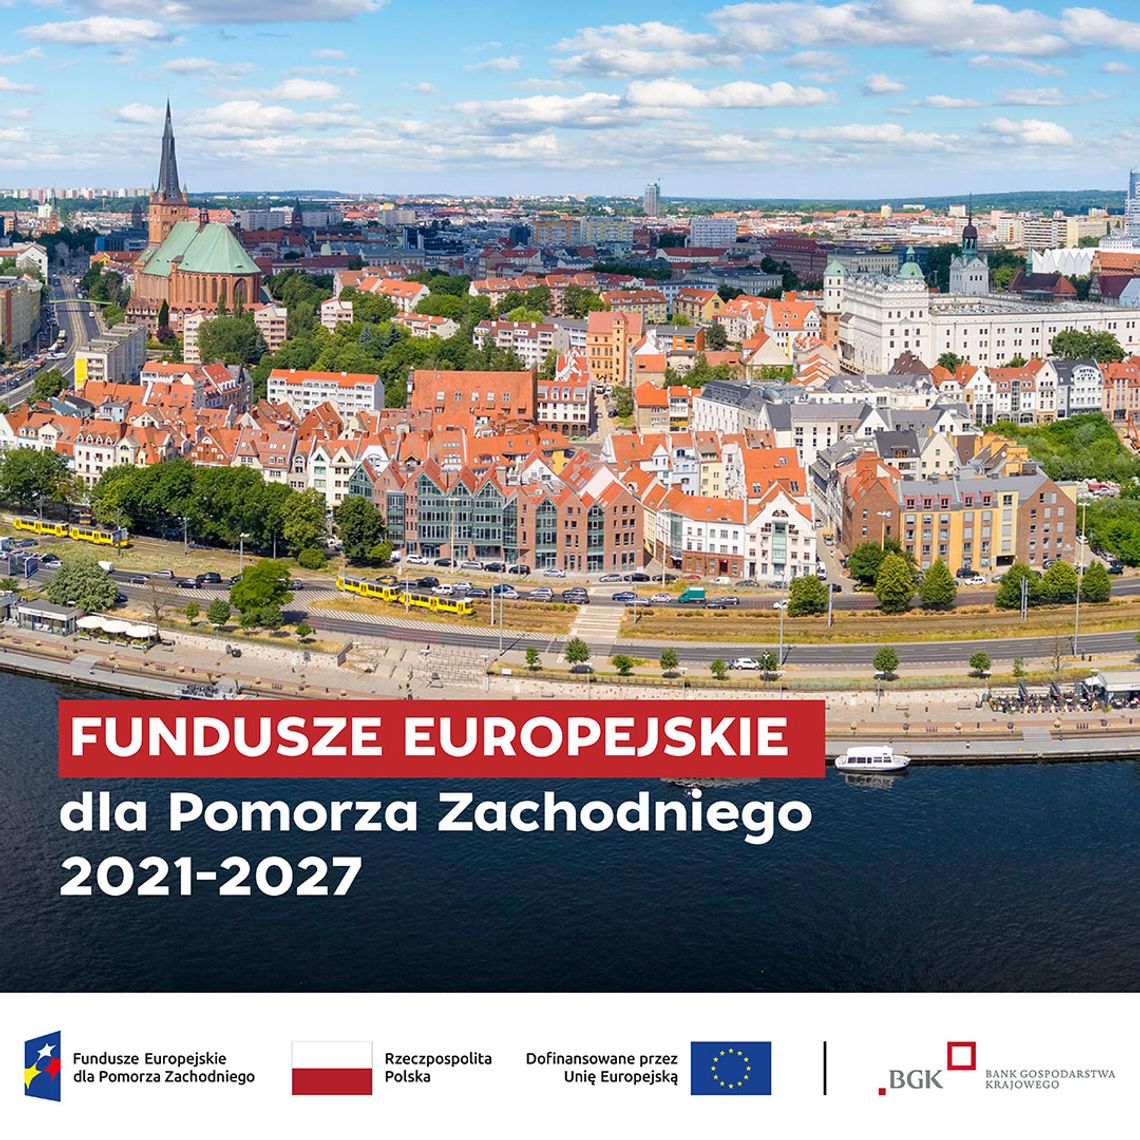 Fundusze Europejskie dla Pomorza Zachodniego 2021-2027 –  kolejna regionalna umowa o finansowanie podpisana